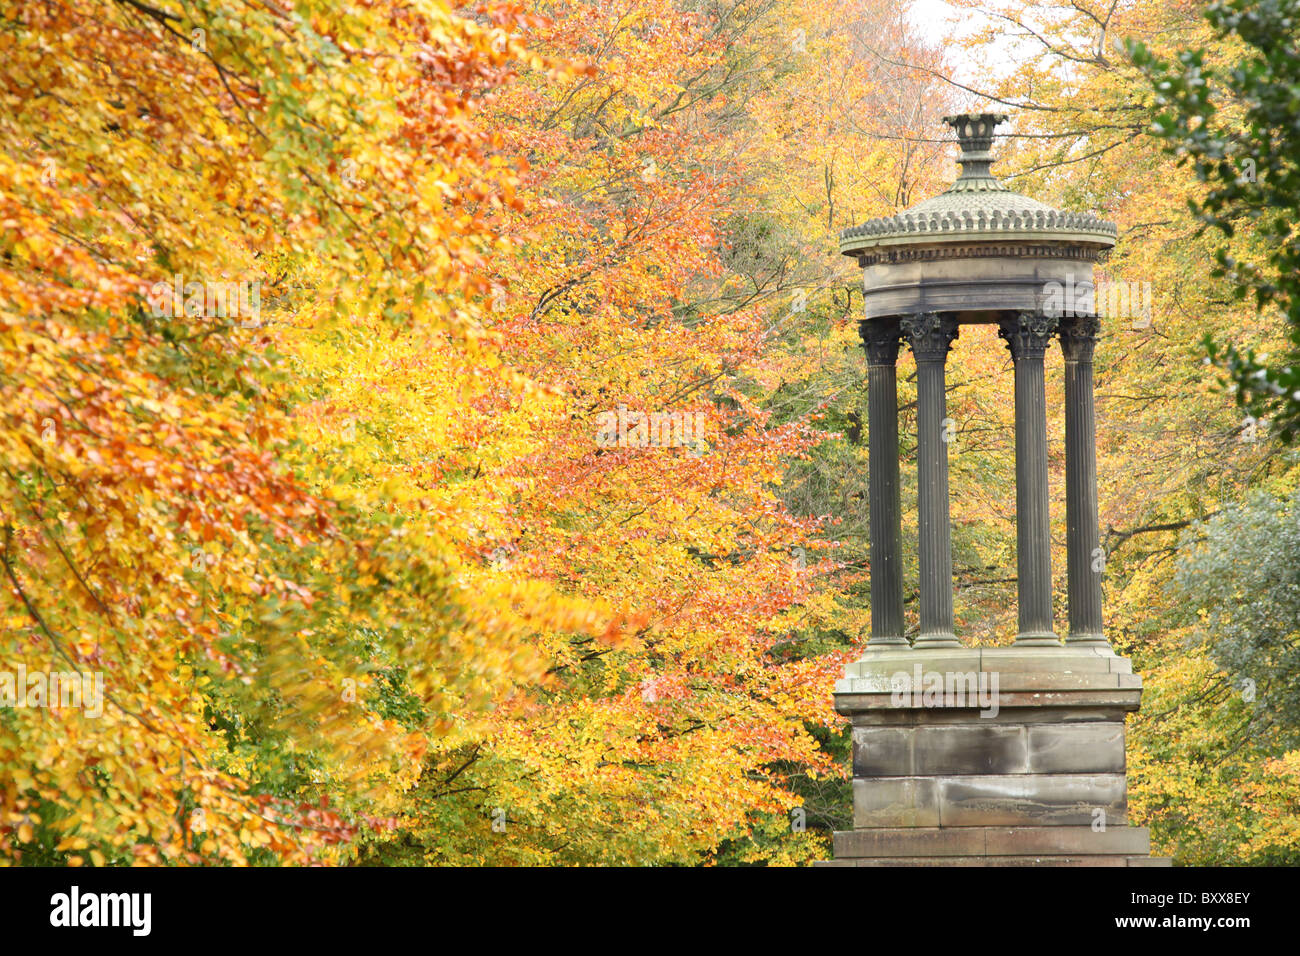 Nachlass von Tatton Park, England. Herbstliche Ansicht des frühen 19. Jahrhunderts befindet sich Choragic-Denkmal am Ende der breiten Fuß. Stockfoto